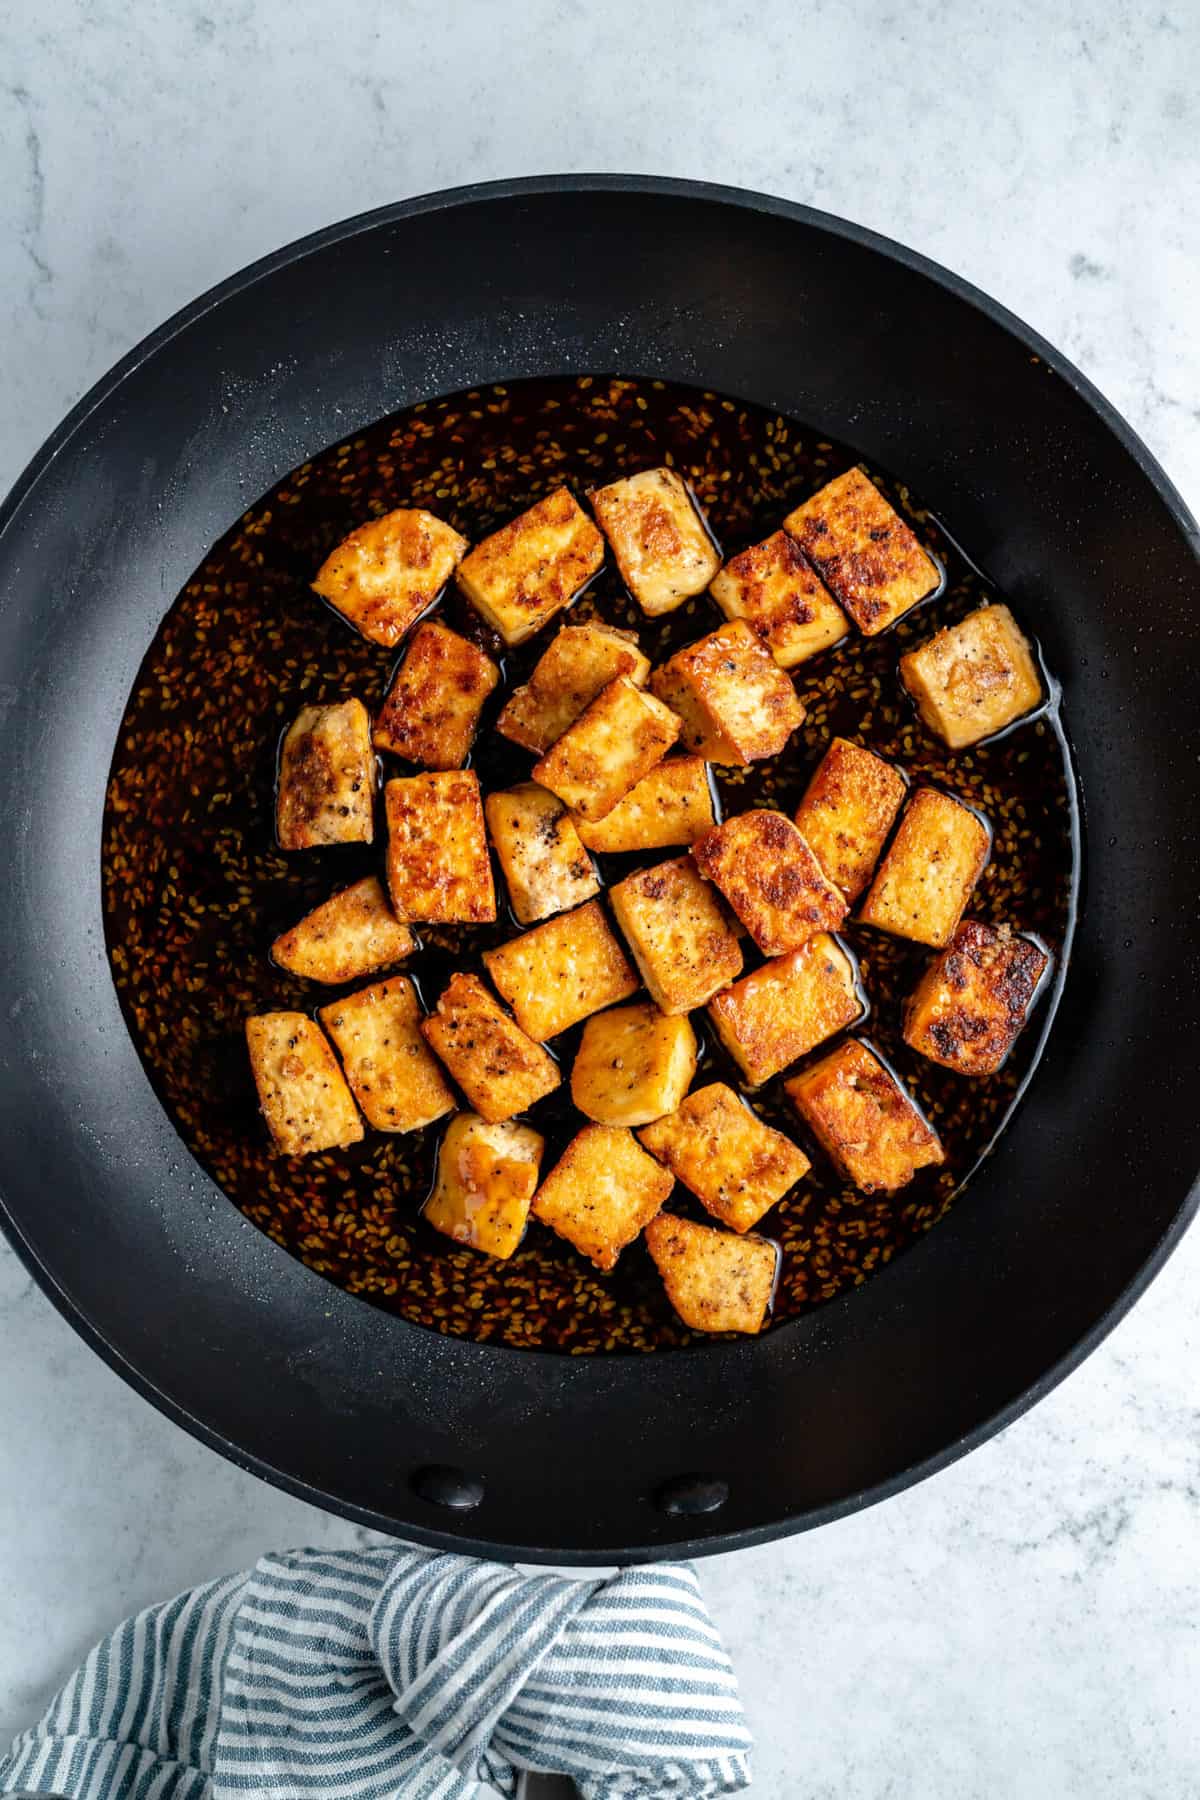 Crispy tofu cubes in teriyaki sauce.